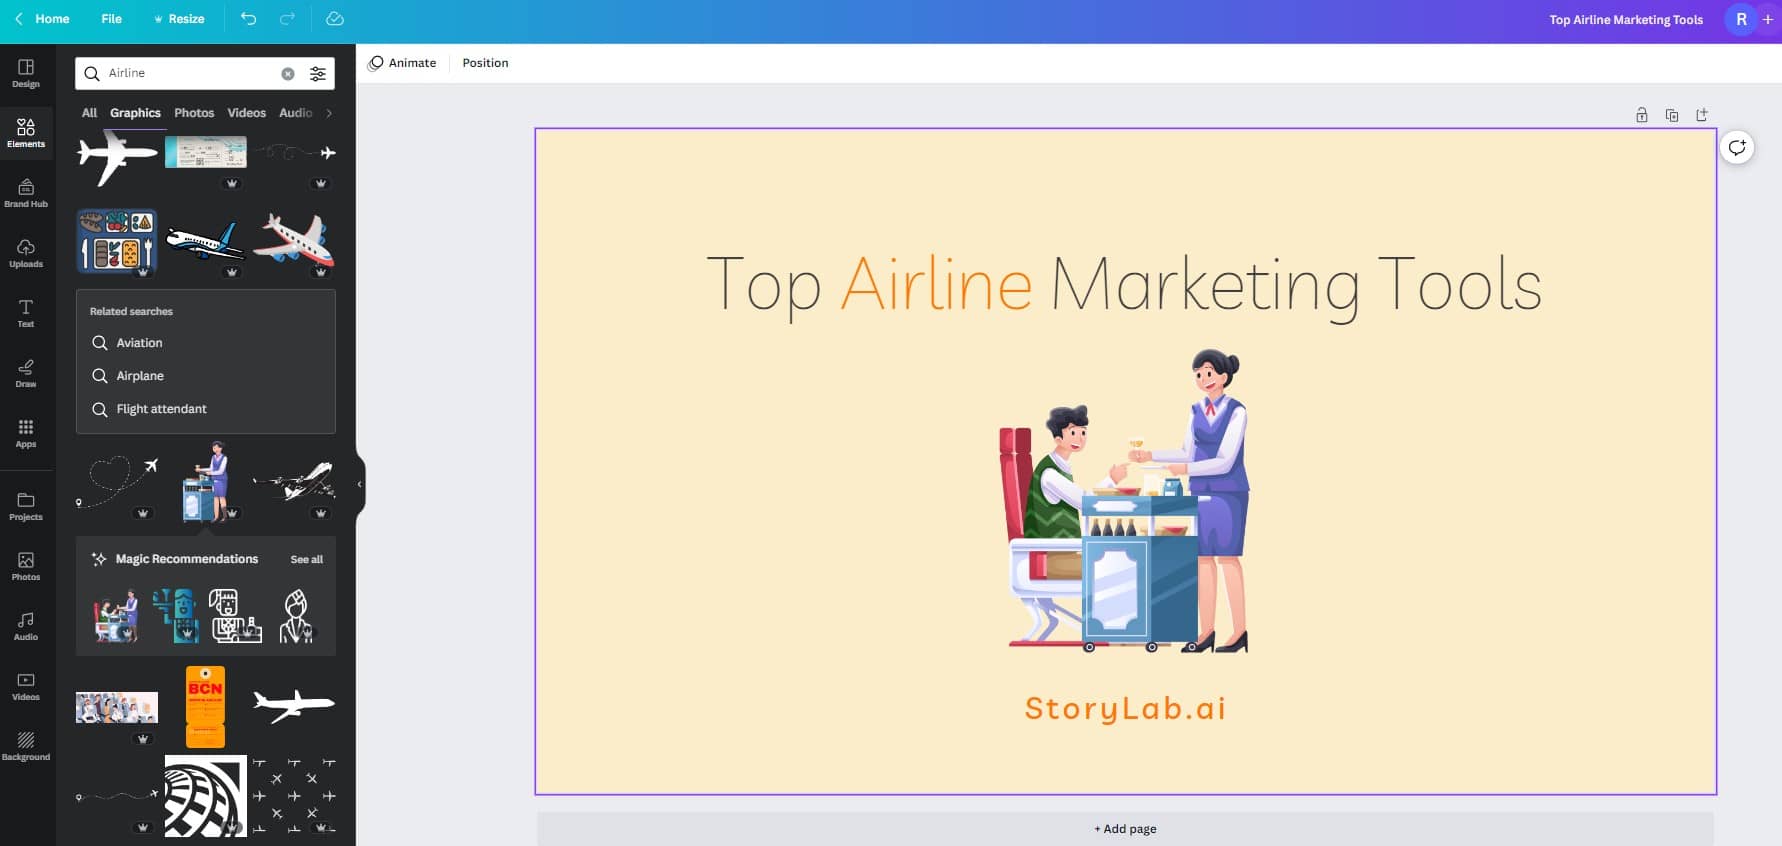 Herramientas de marketing digital para aerolíneas - Canva Ejemplo